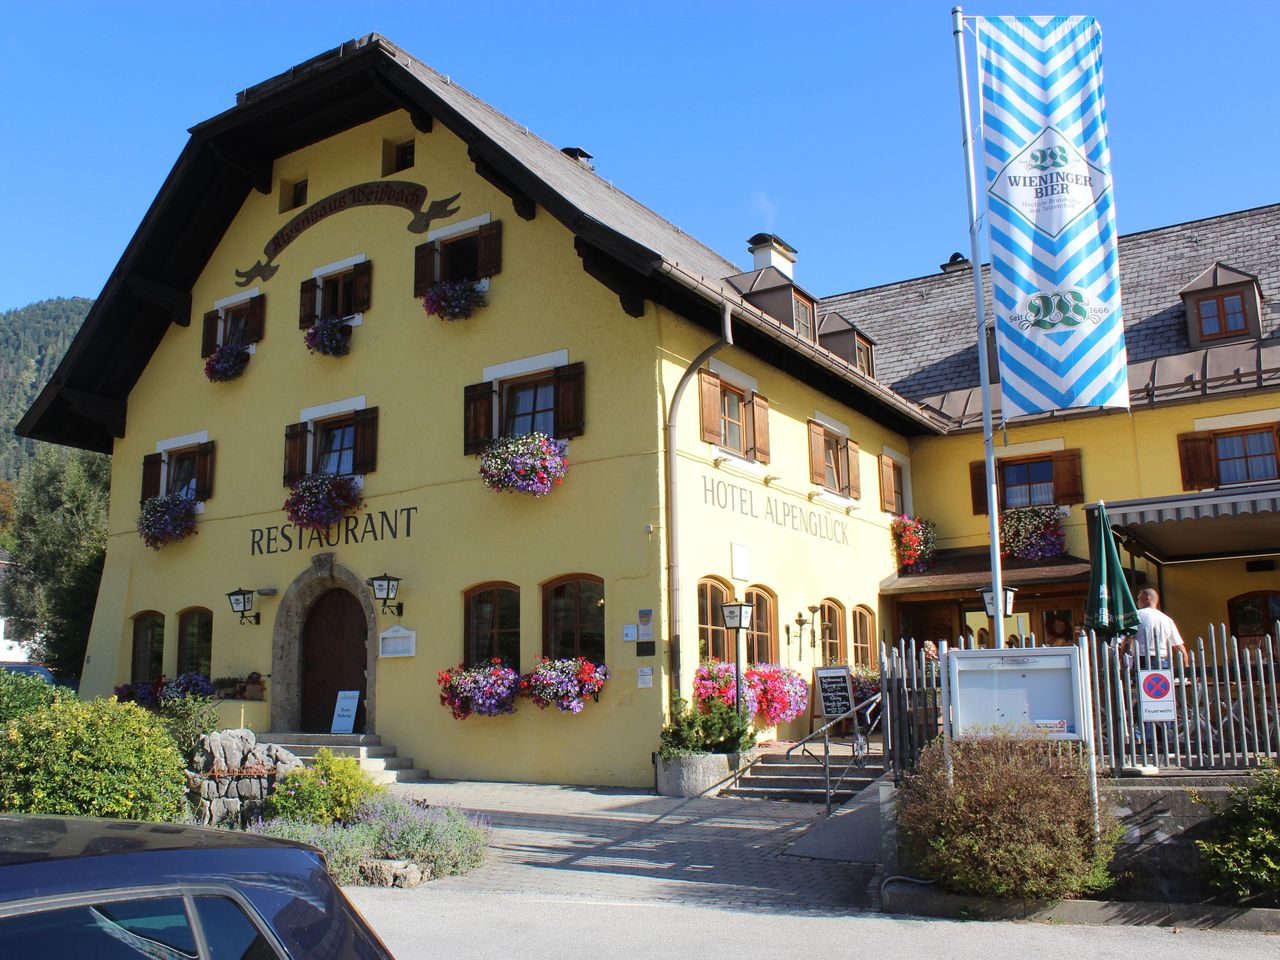 3 Tage das Berchtesgadener Land erkunden